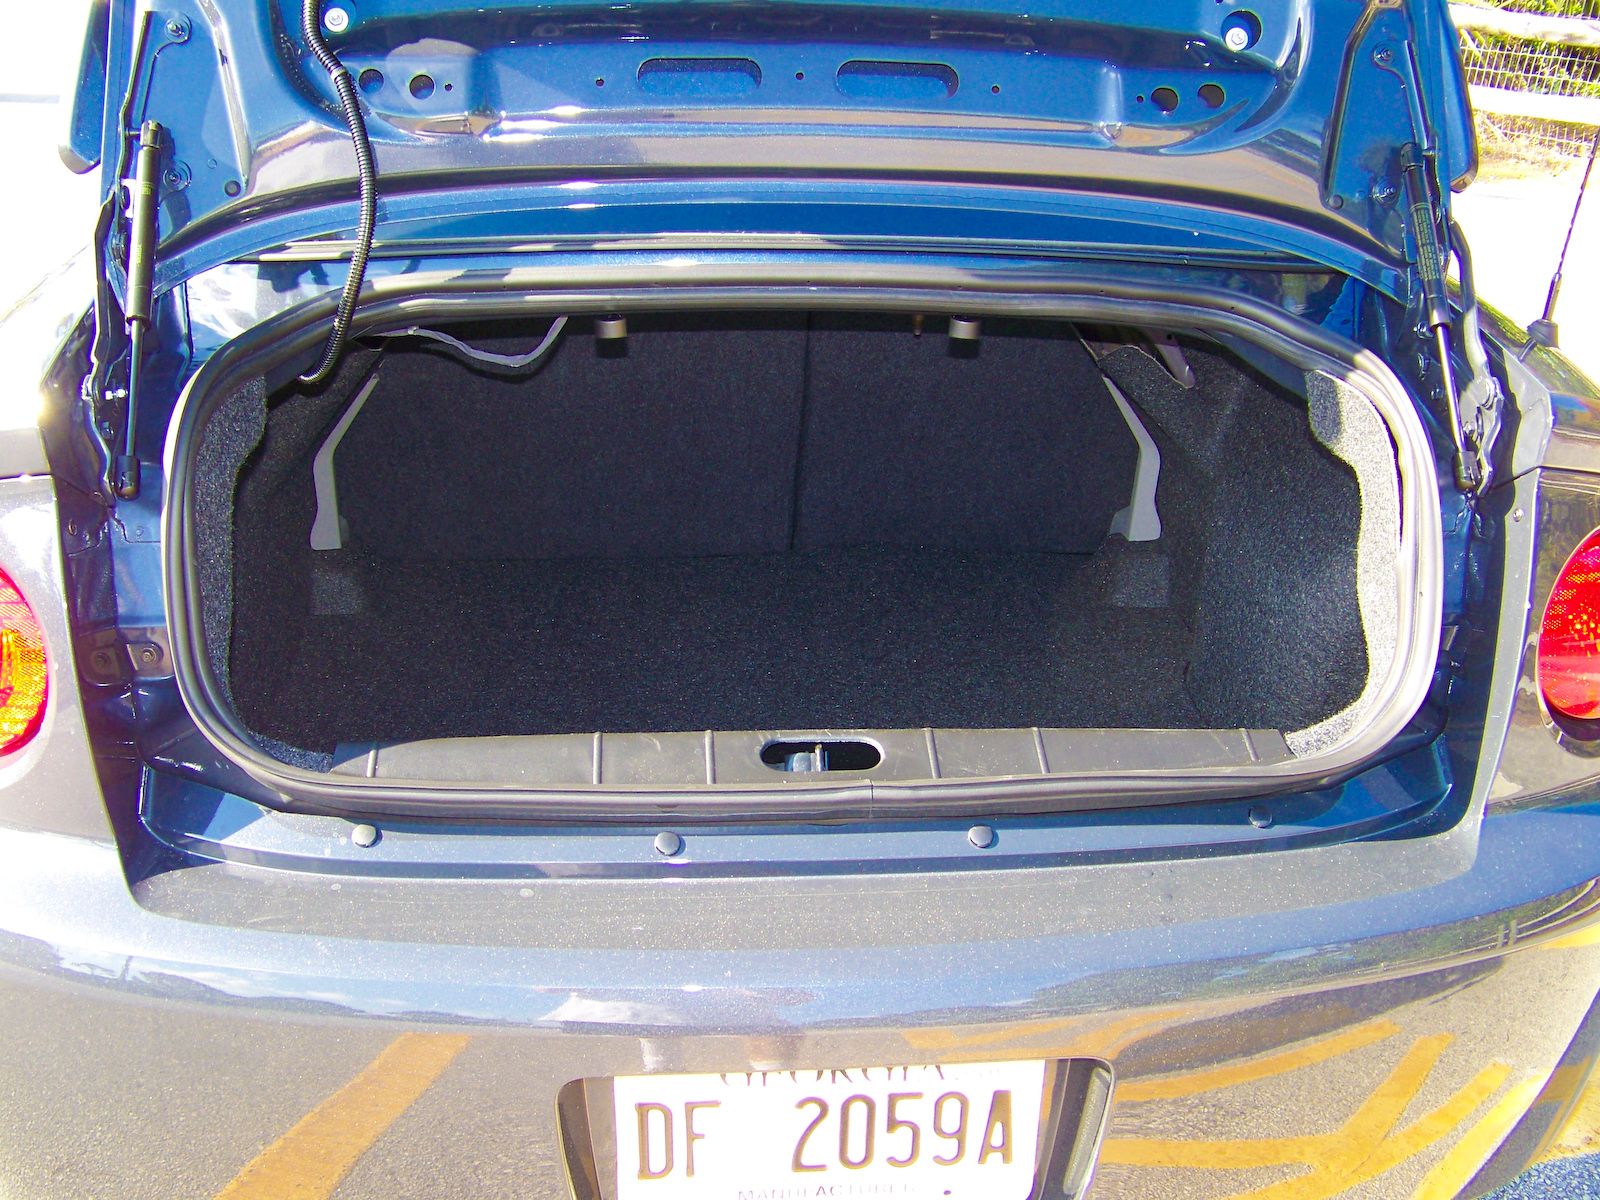 2009 Chevrolet Cobalt XFE